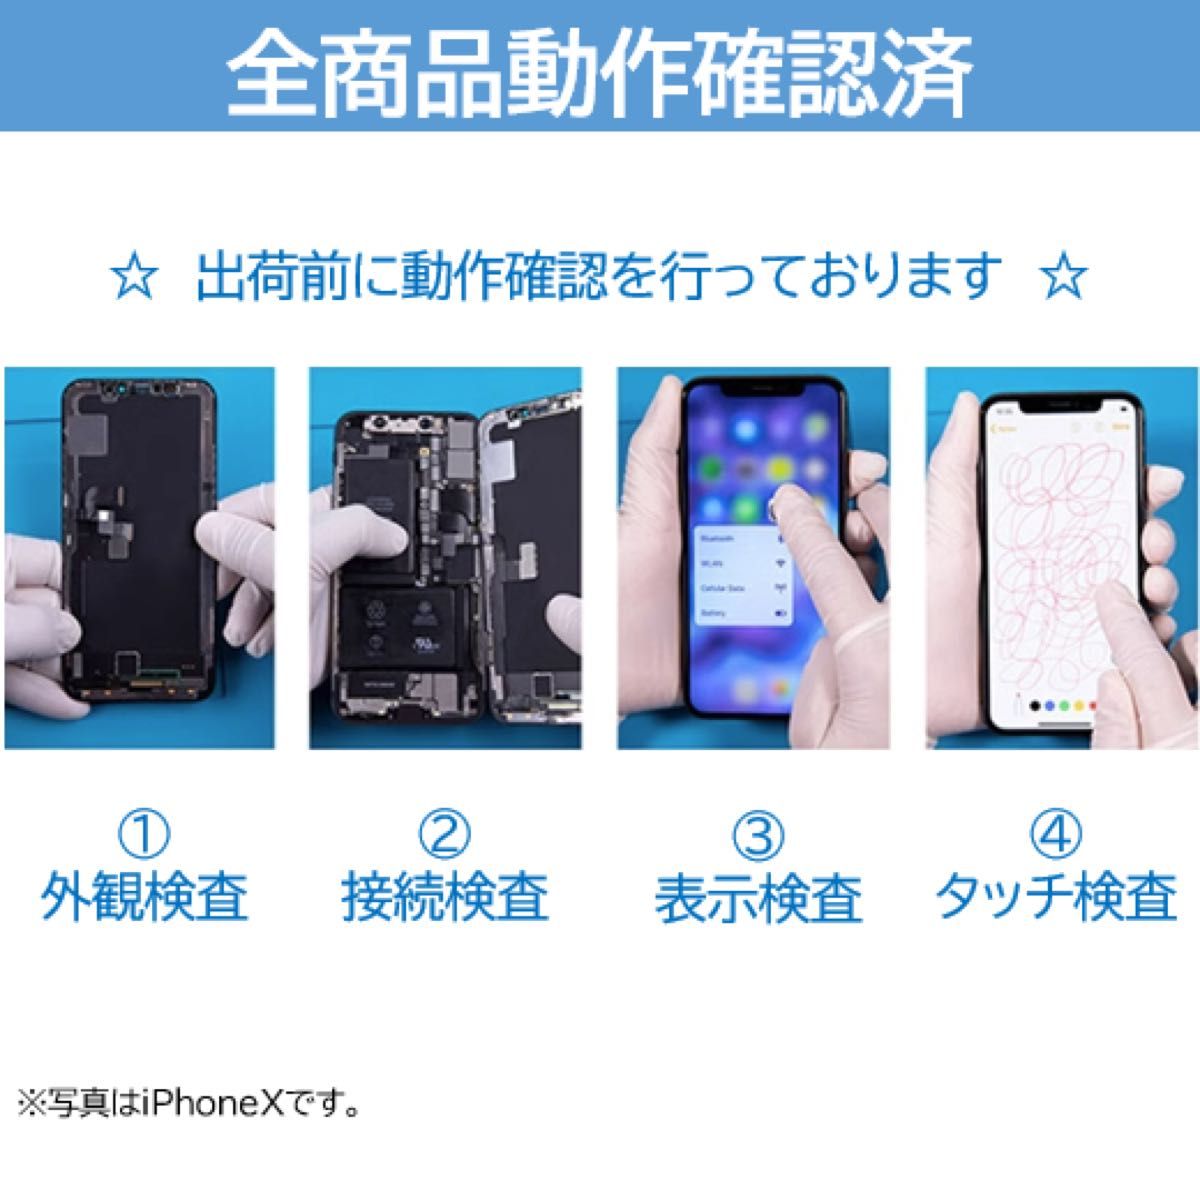 【新品】iPhone7黒 液晶フロントパネル 画面修理交換用 工具付